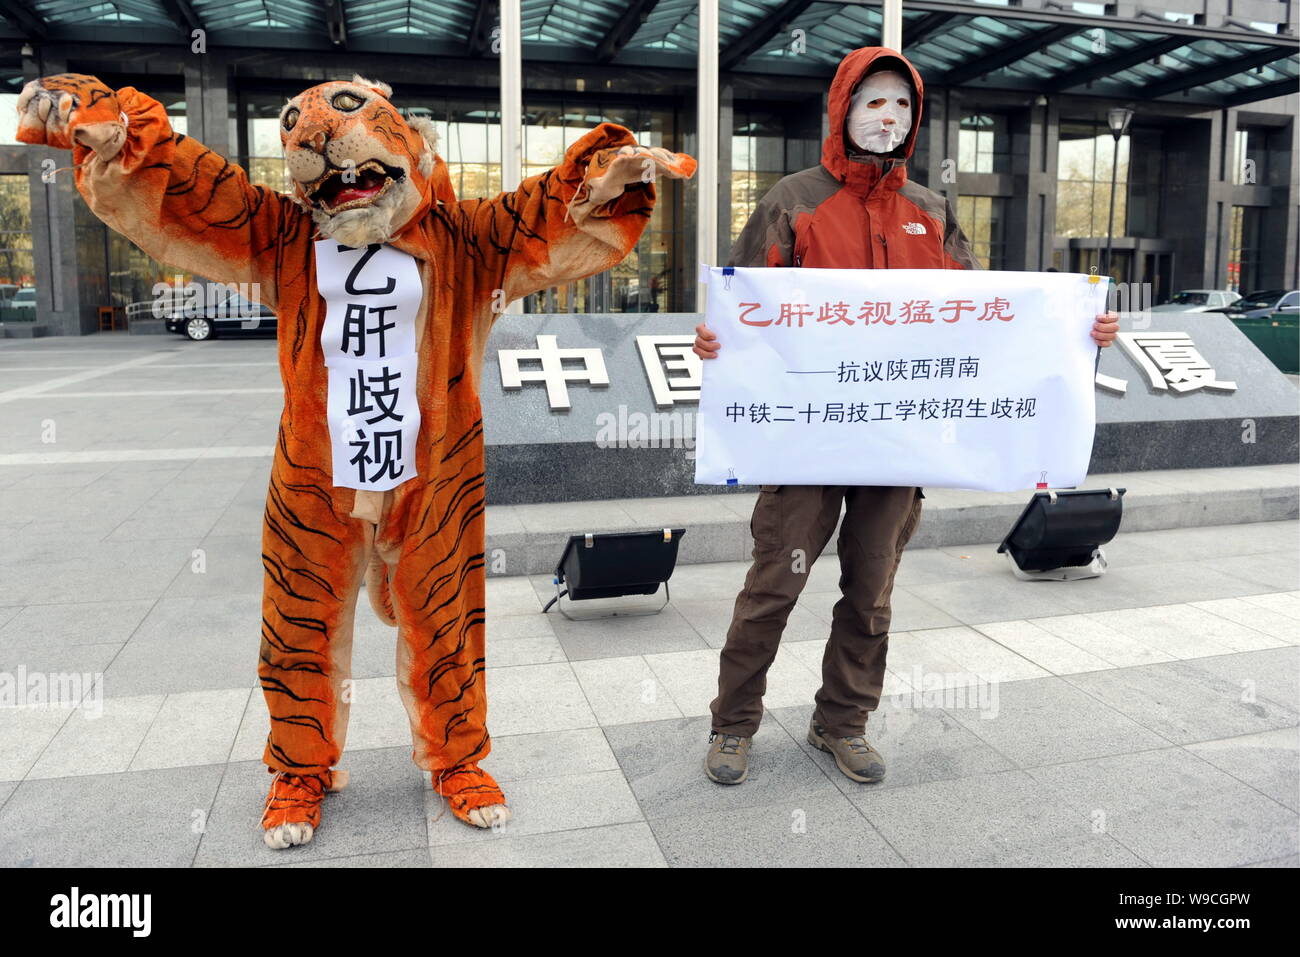 Eine chinesische Menschenrechtsaktivist zeigt Anzeichen von Beschwerden neben einer Hepatitis Bvirus Träger wie ein Tiger in einem Protest gegen Diskriminierung gekleidet Stockfoto